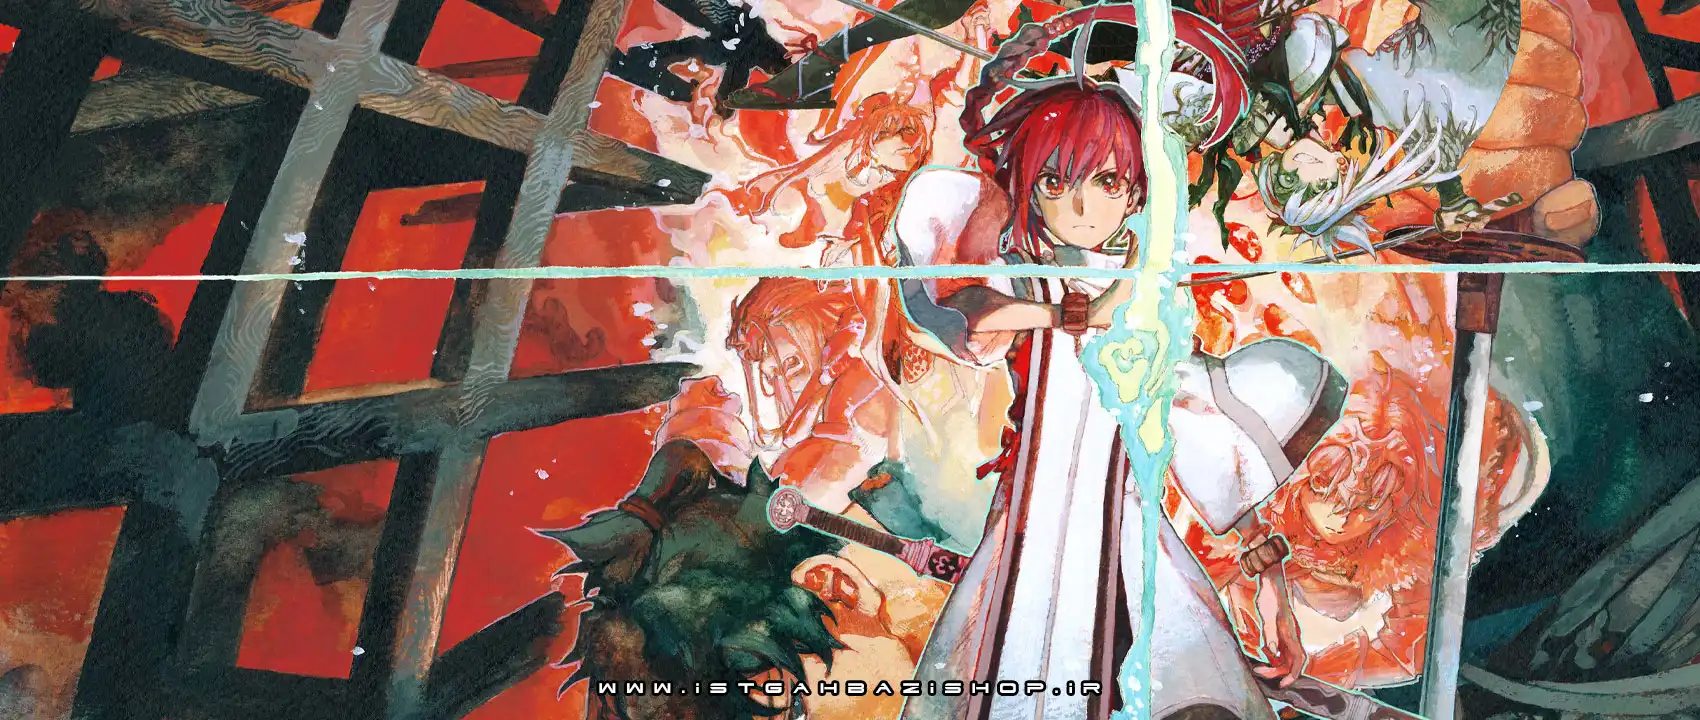 بازی Fate Samurai Remnant برای PS4